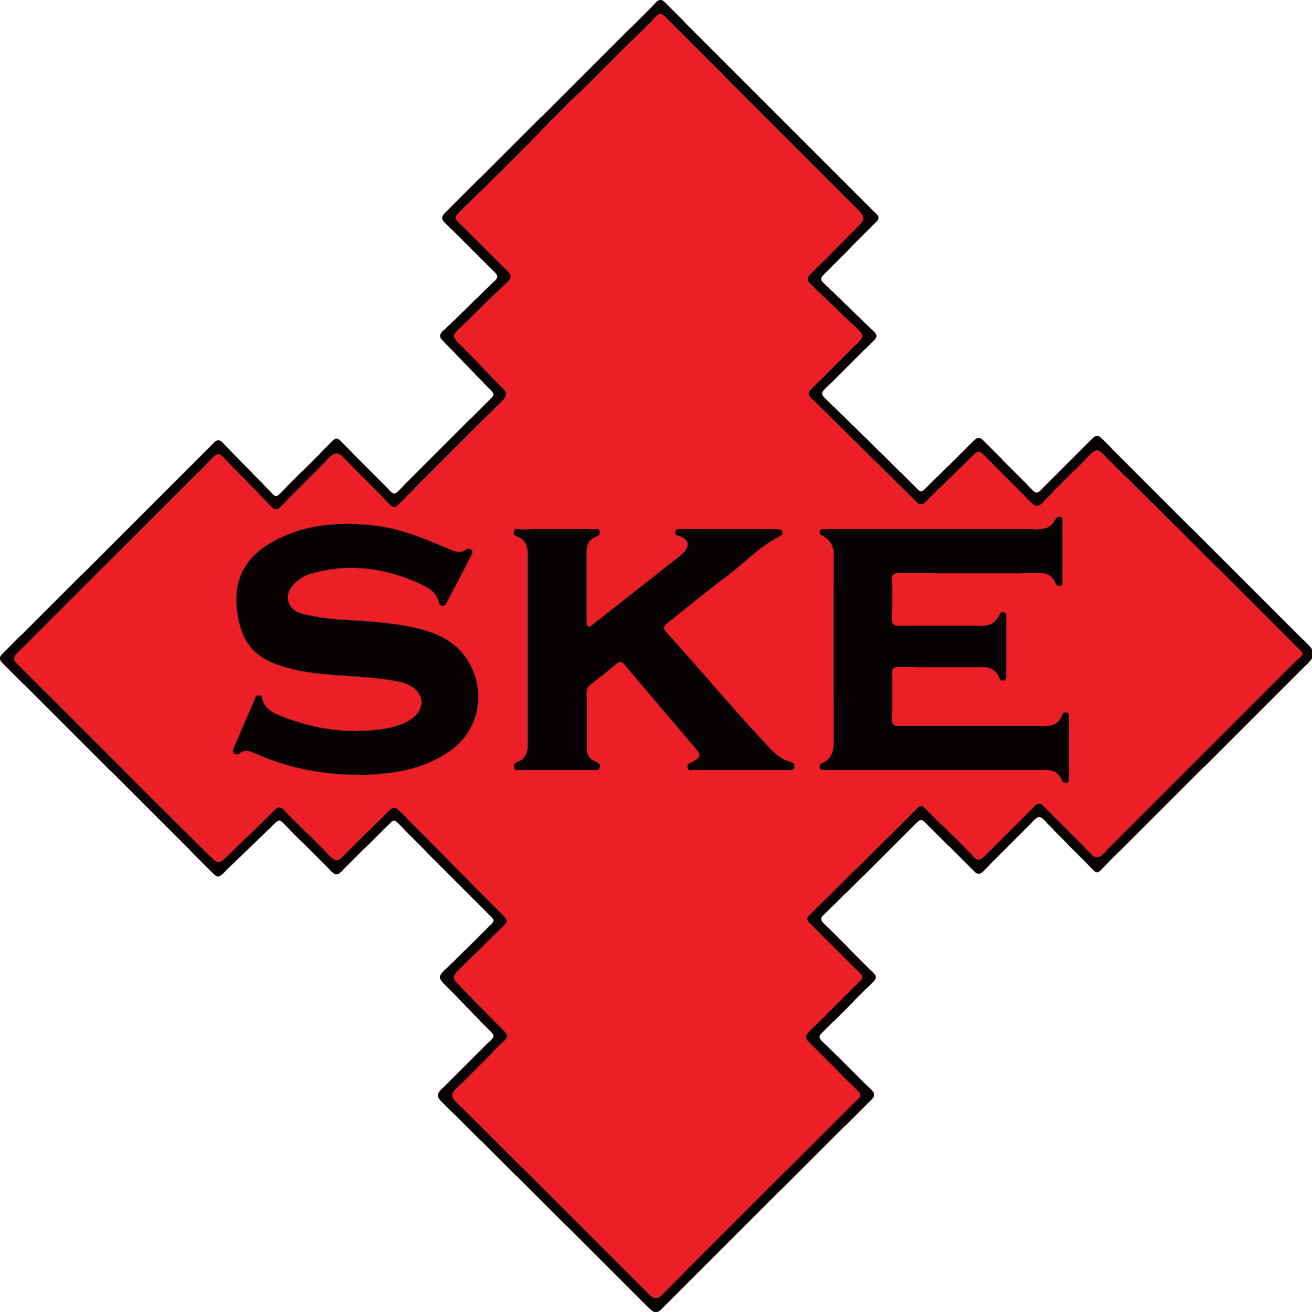 Ske Construction Llc Market Leader In Pre Chlorinated Pipe Bursting